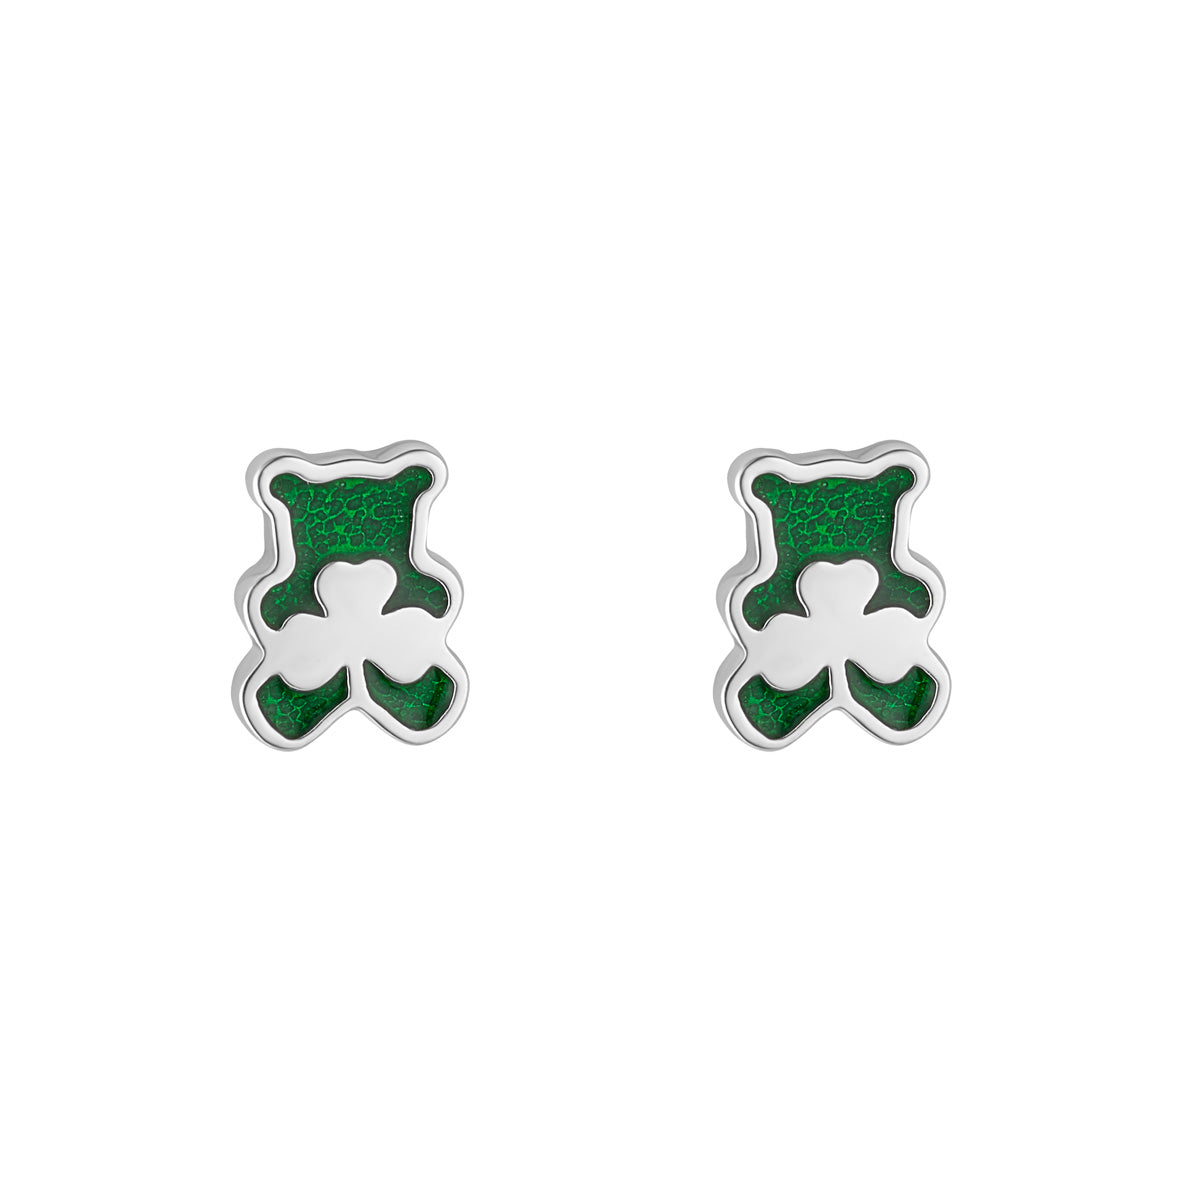 Stock image of Solvar shamrock teddy bear earrings in silver s34220